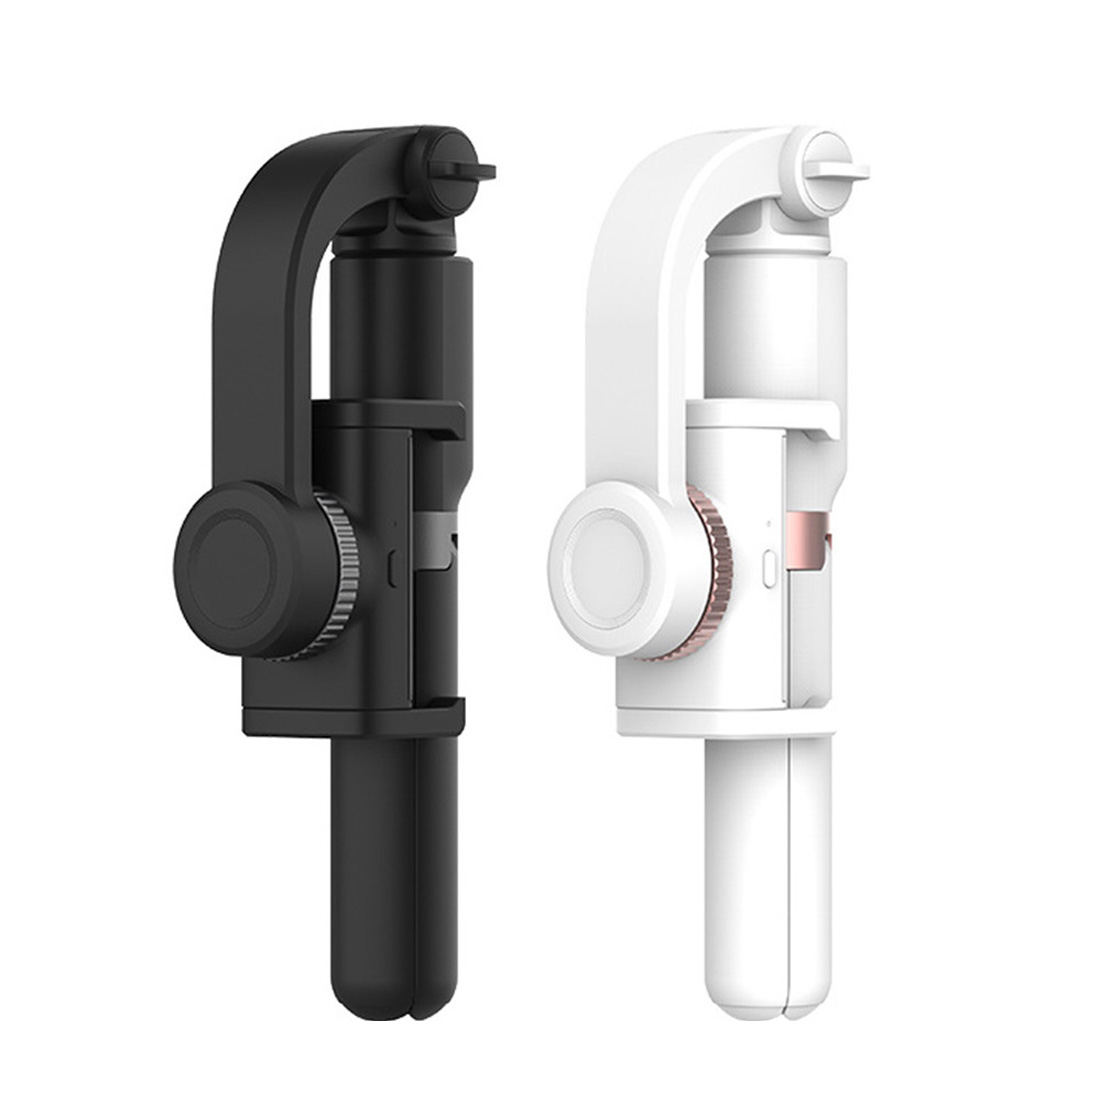 BGNING Universal Portable Selfie Stick , vlog Shooting Live Artifact Handheld Shooting Anti-shake Balancing Gimbal Suitable for Mobile Phone Single Axis Gimbal